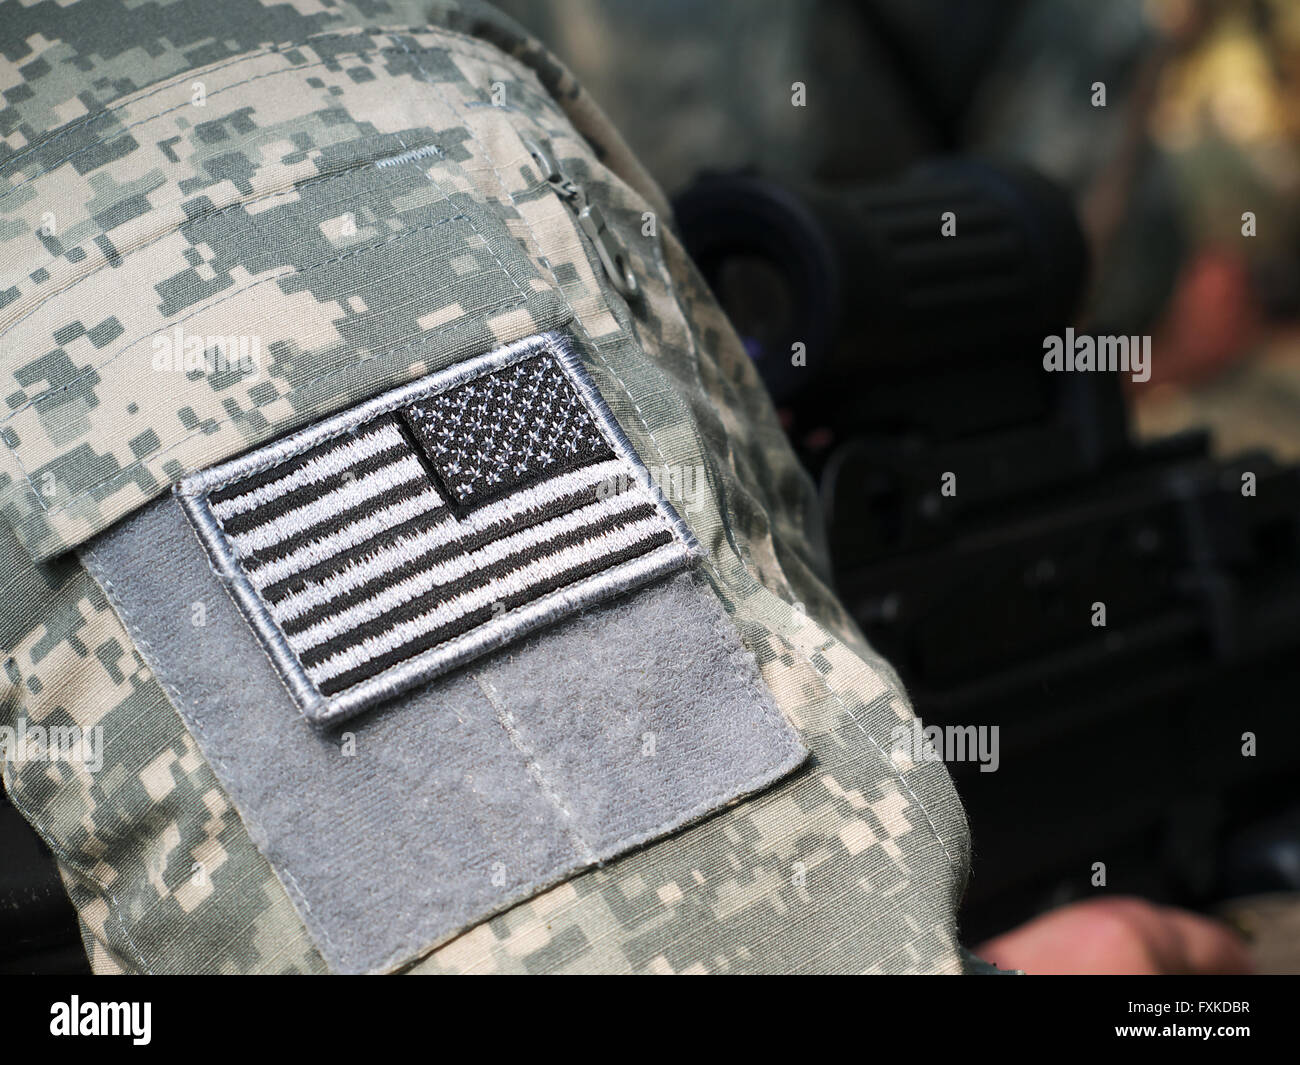 US-Armee einheitliche Element - Hülse Patch mit Flagge und Maschinengewehr auf dem Hintergrund Stockfoto